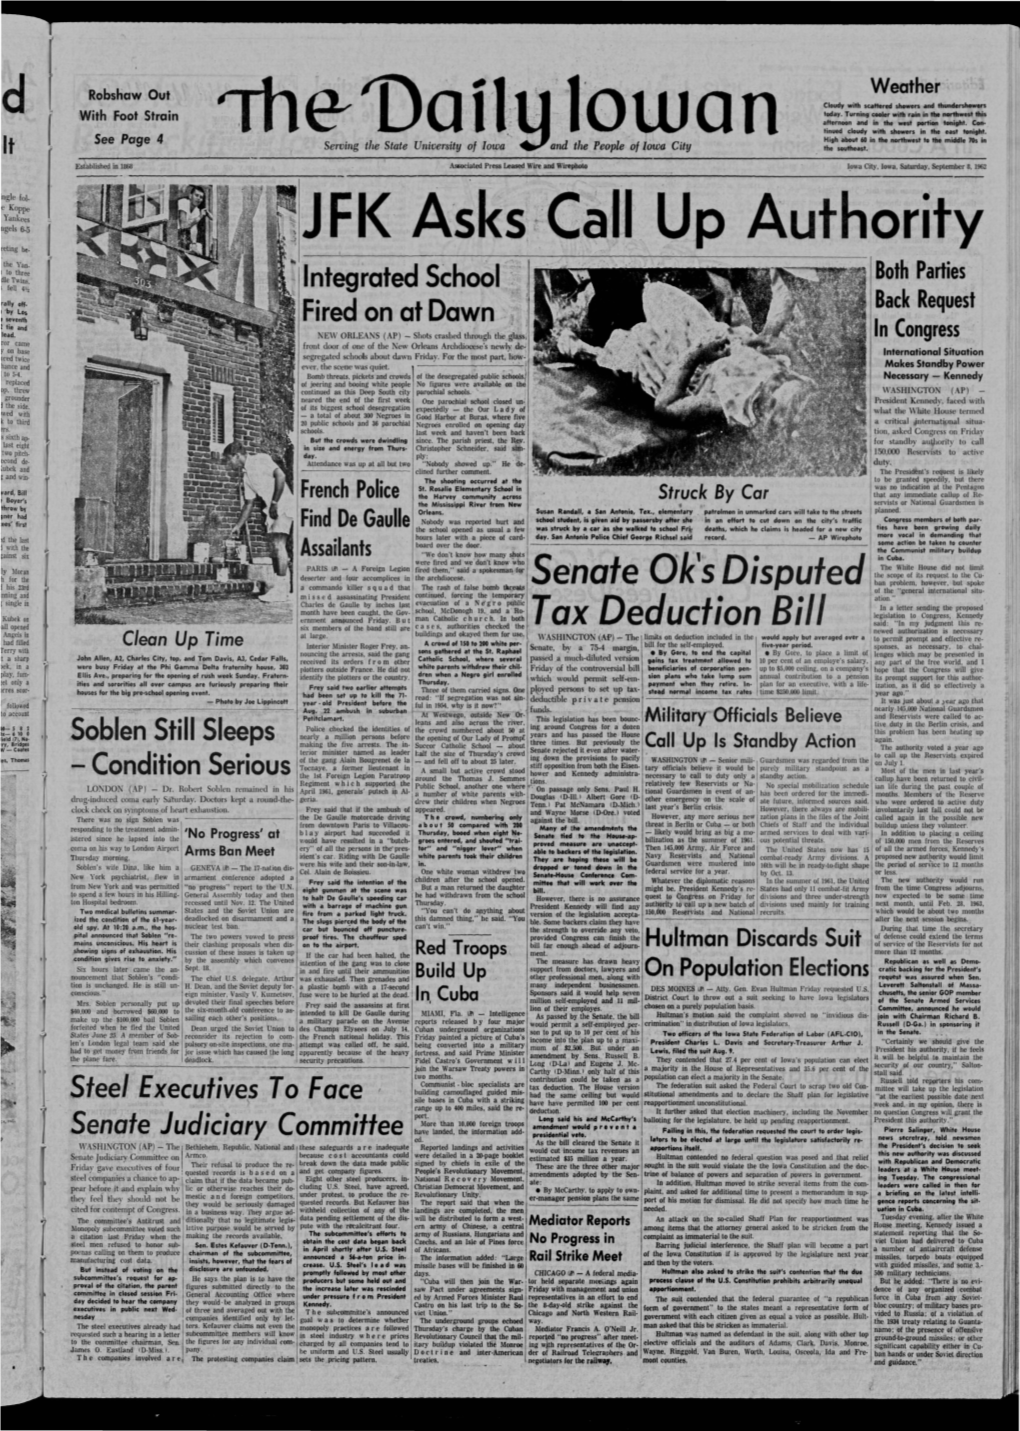 Daily Iowan (Iowa City, Iowa), 1962-09-08